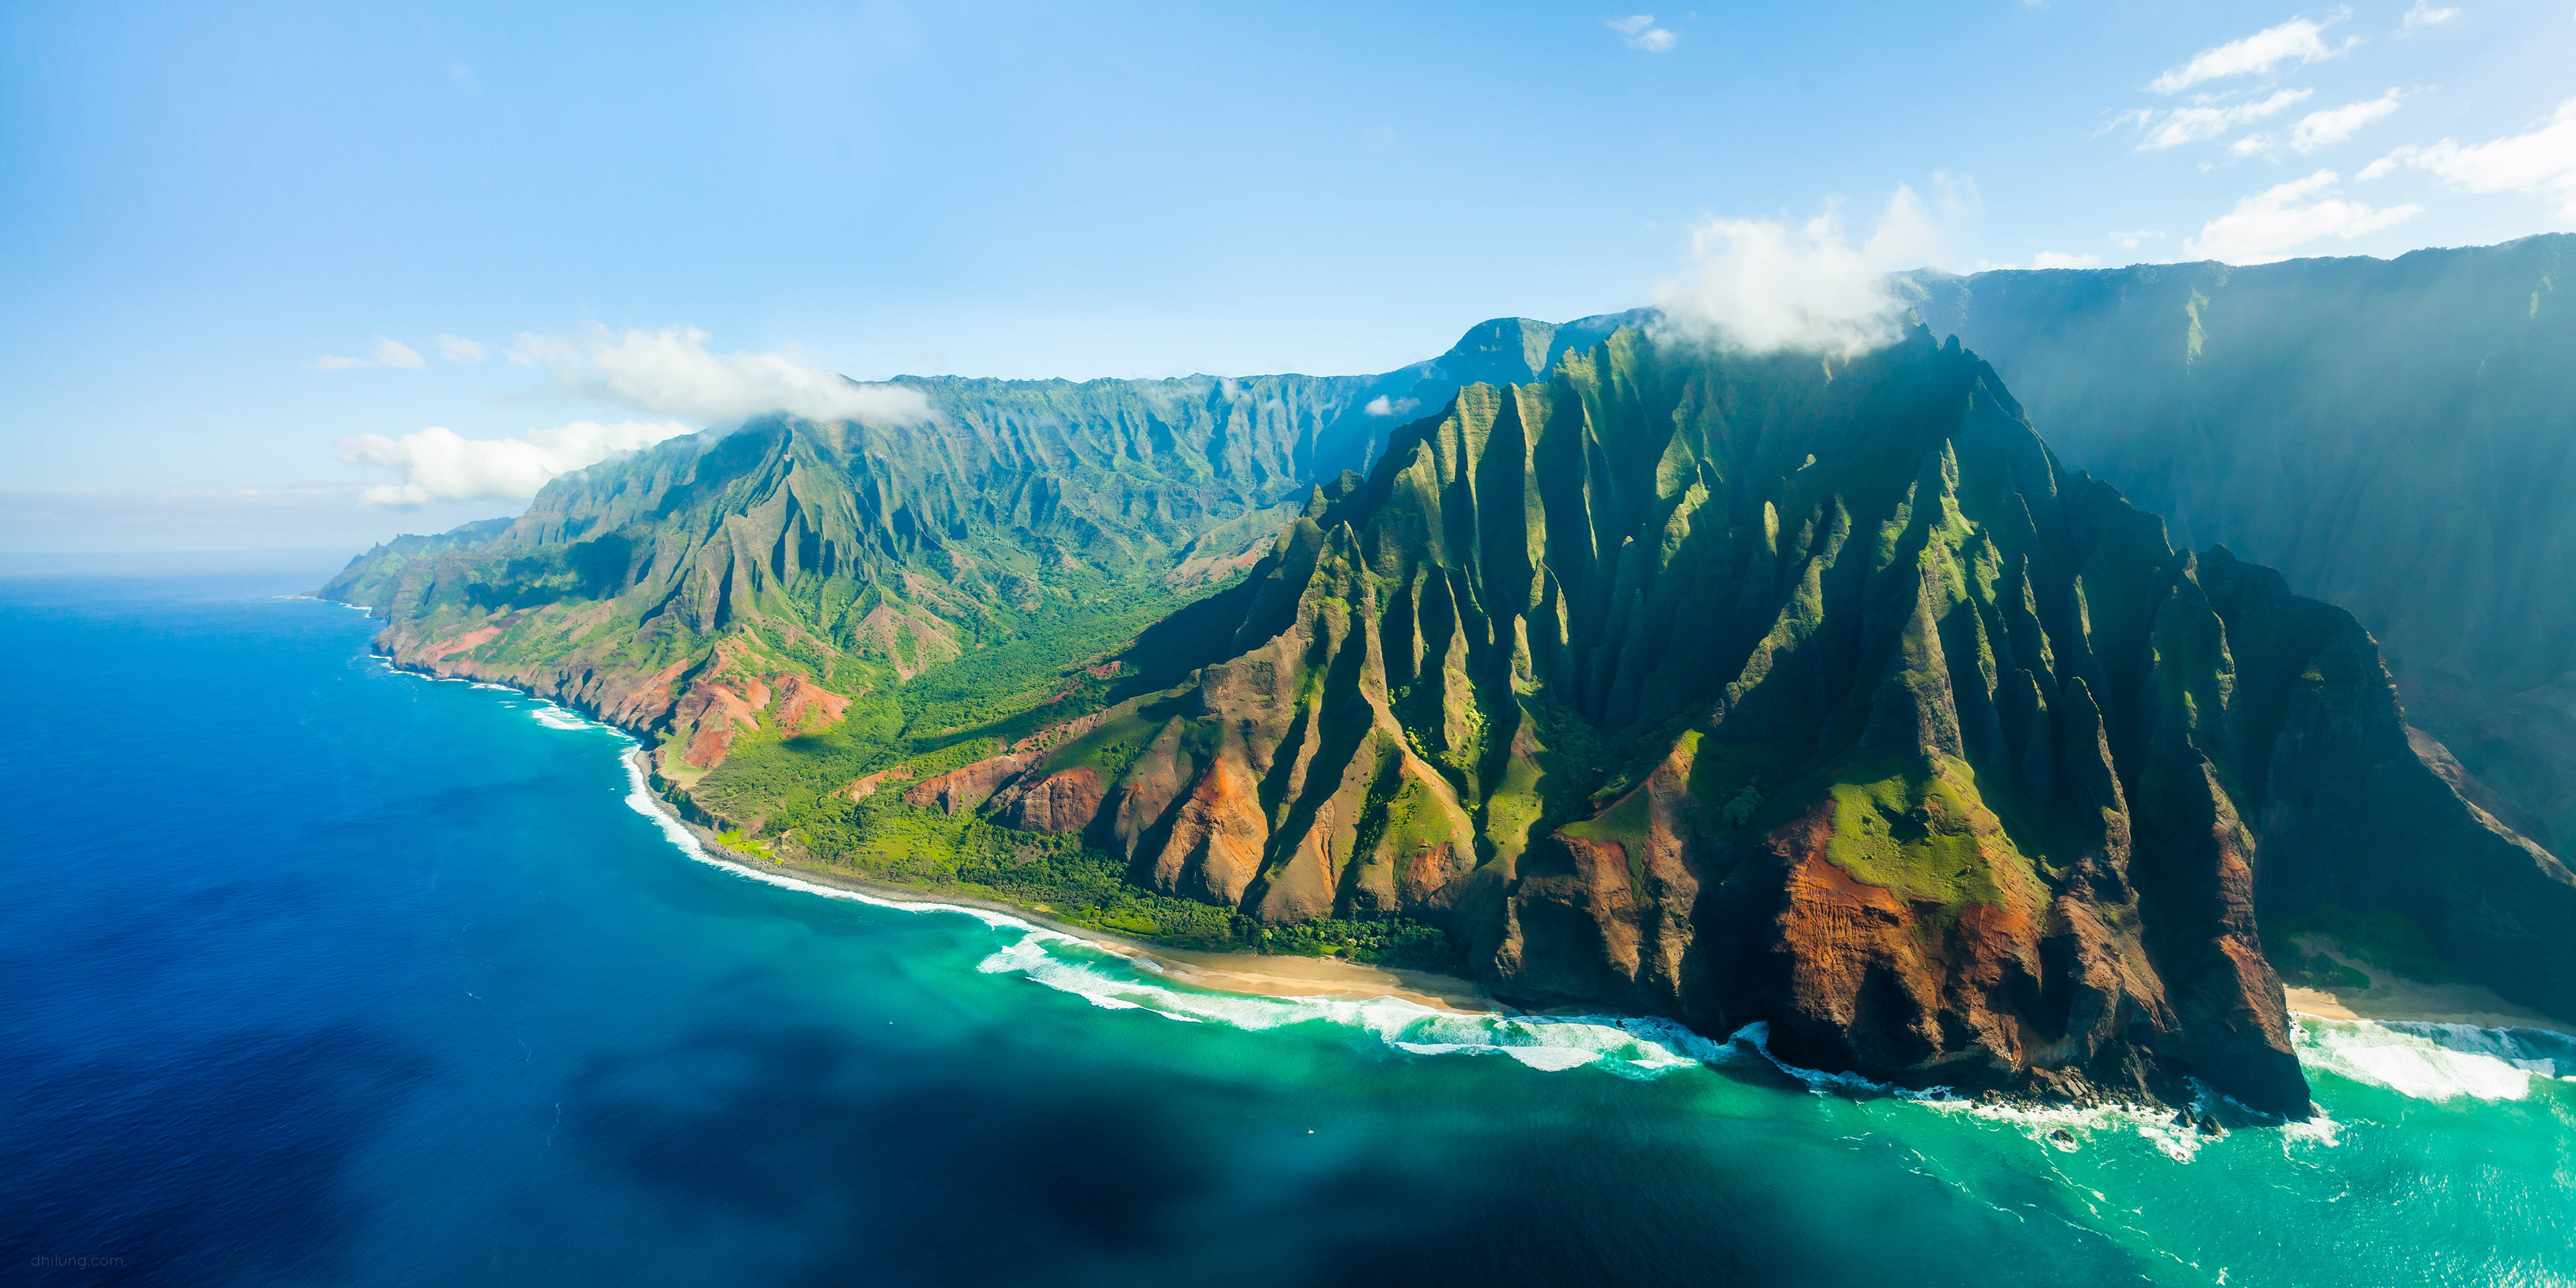 Island With Grass Field Near Body Of Water, Kauai, - Nā Pali Coast Kauai Hawaii , HD Wallpaper & Backgrounds